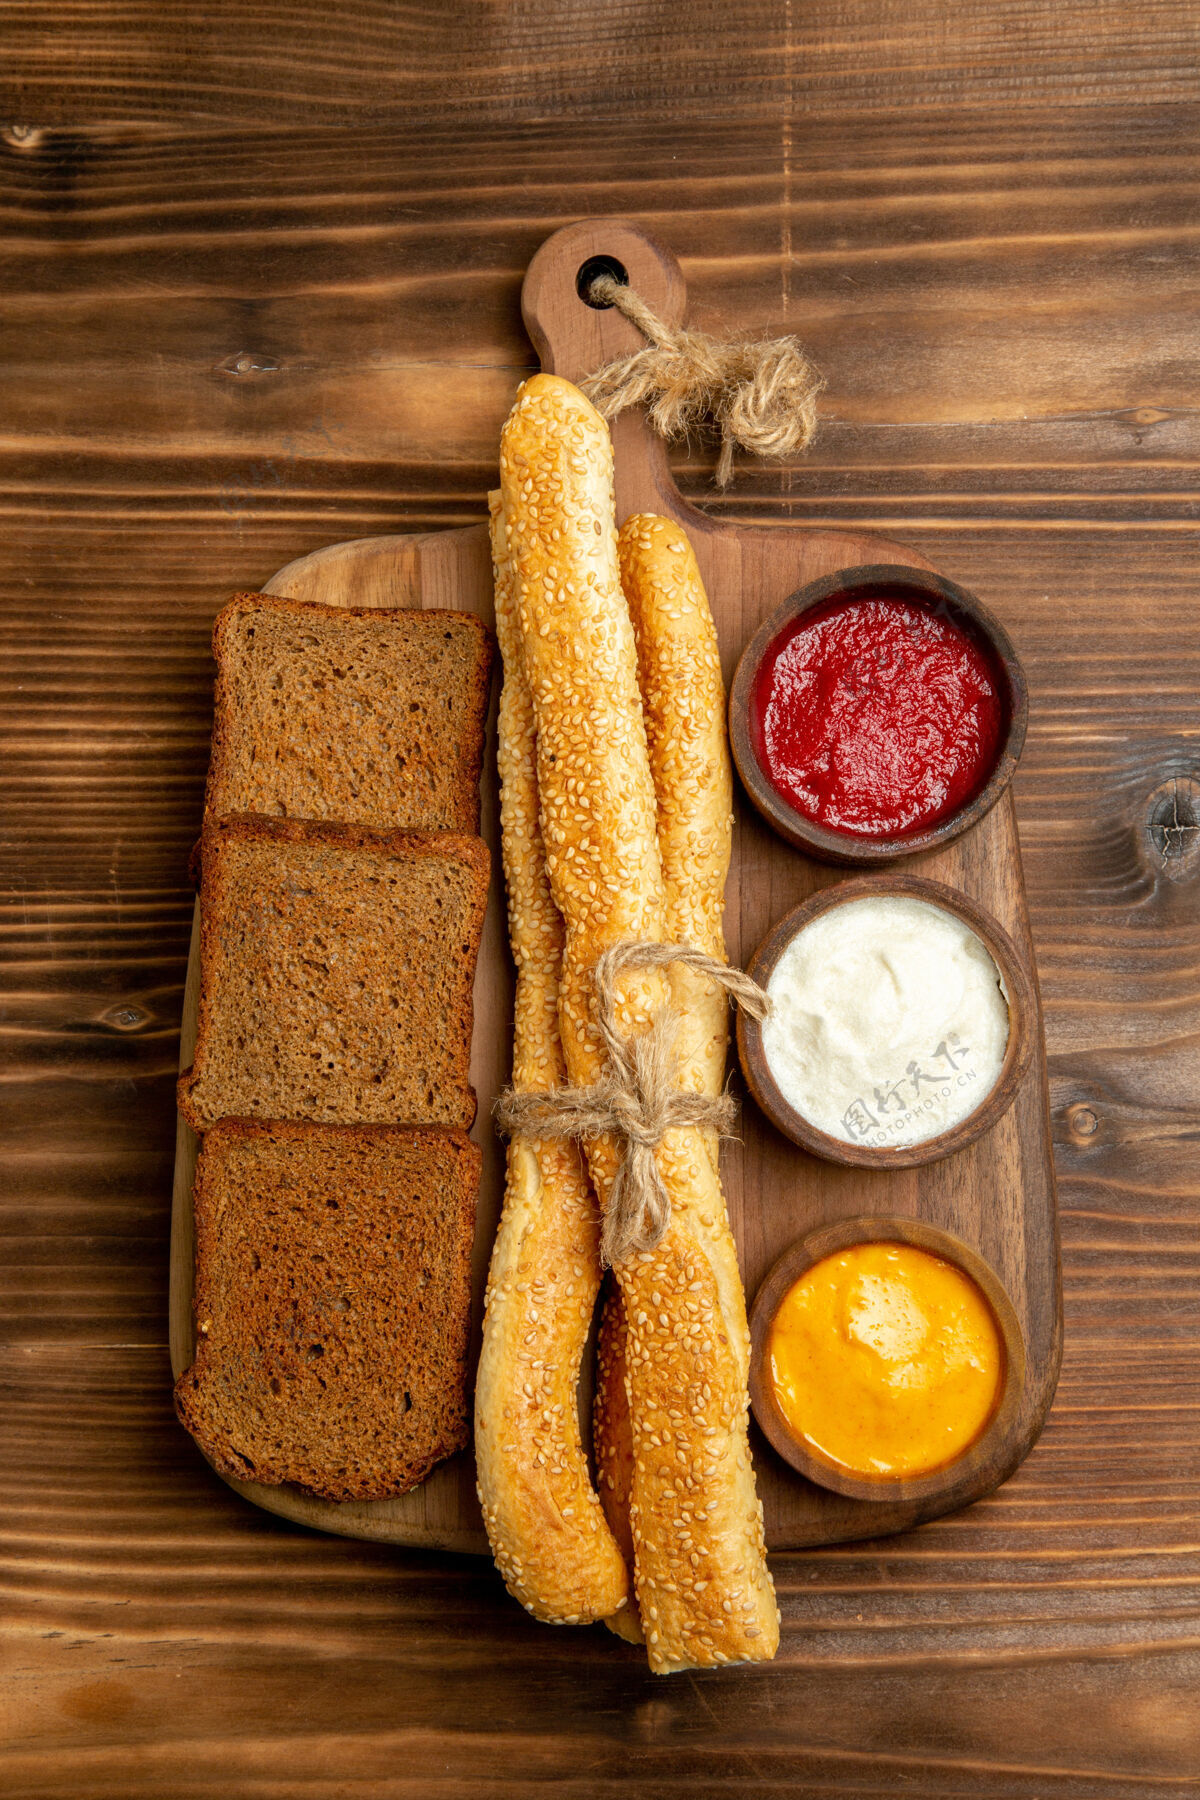 水果顶视图黑面包面包面包和调味品在棕色桌子上食物面包面包面包面包辛辣桌子晚餐馒头